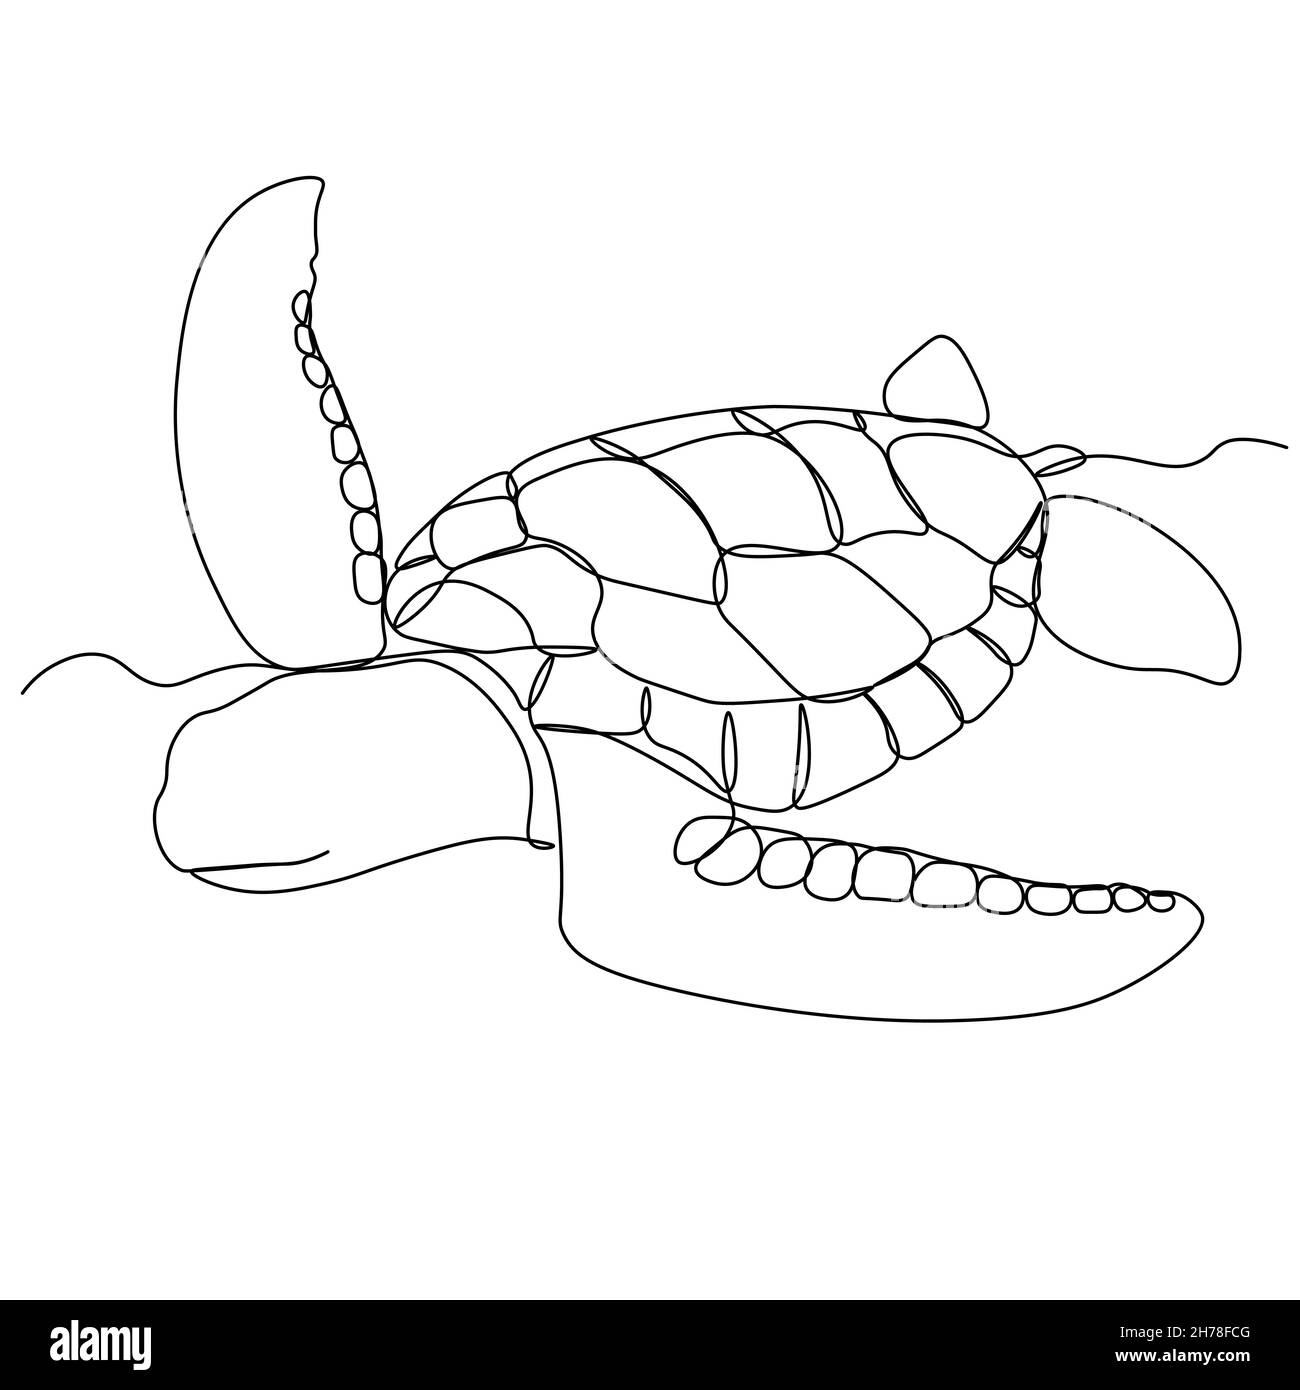 Eine einzeilige Zeichnung der großen Schildkröte für marine Firmenlogo Identität. Entzückende Kreatur Reptil Tier Maskottchen Konzept für die Erhaltung Stiftung. C Stock Vektor